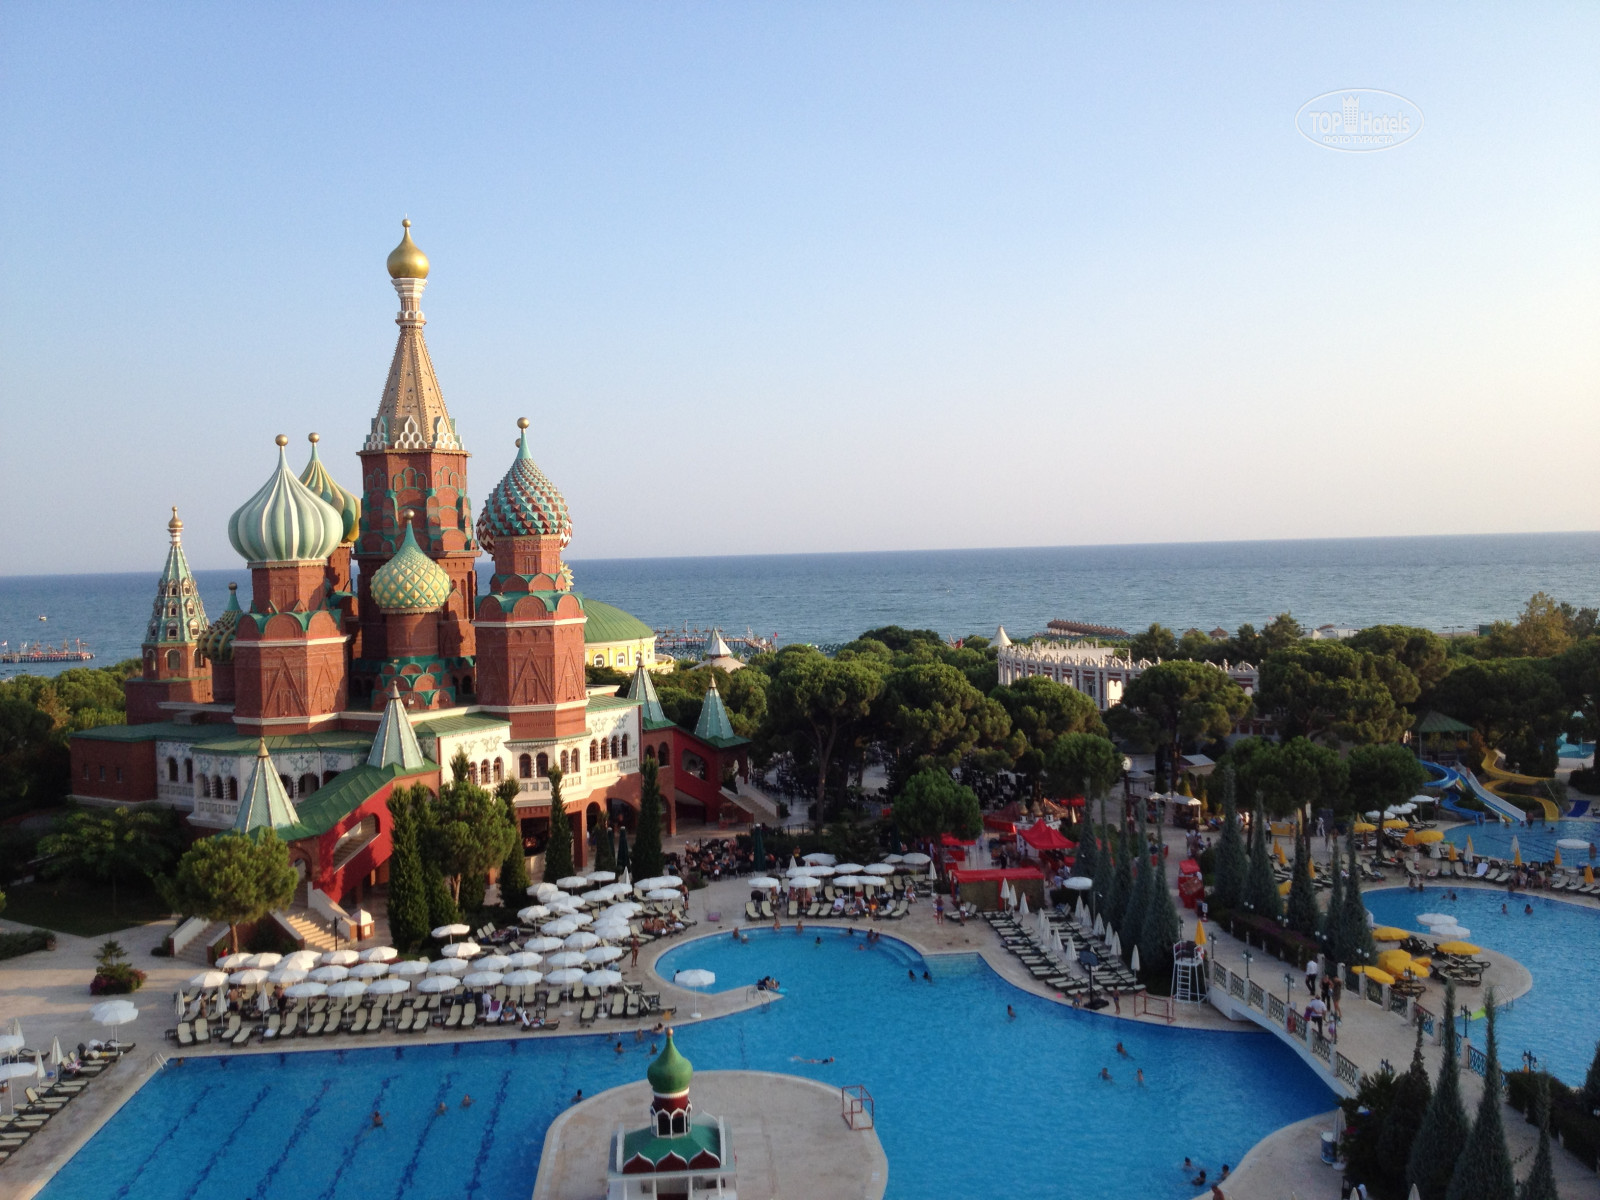 отель кремль в турции фото